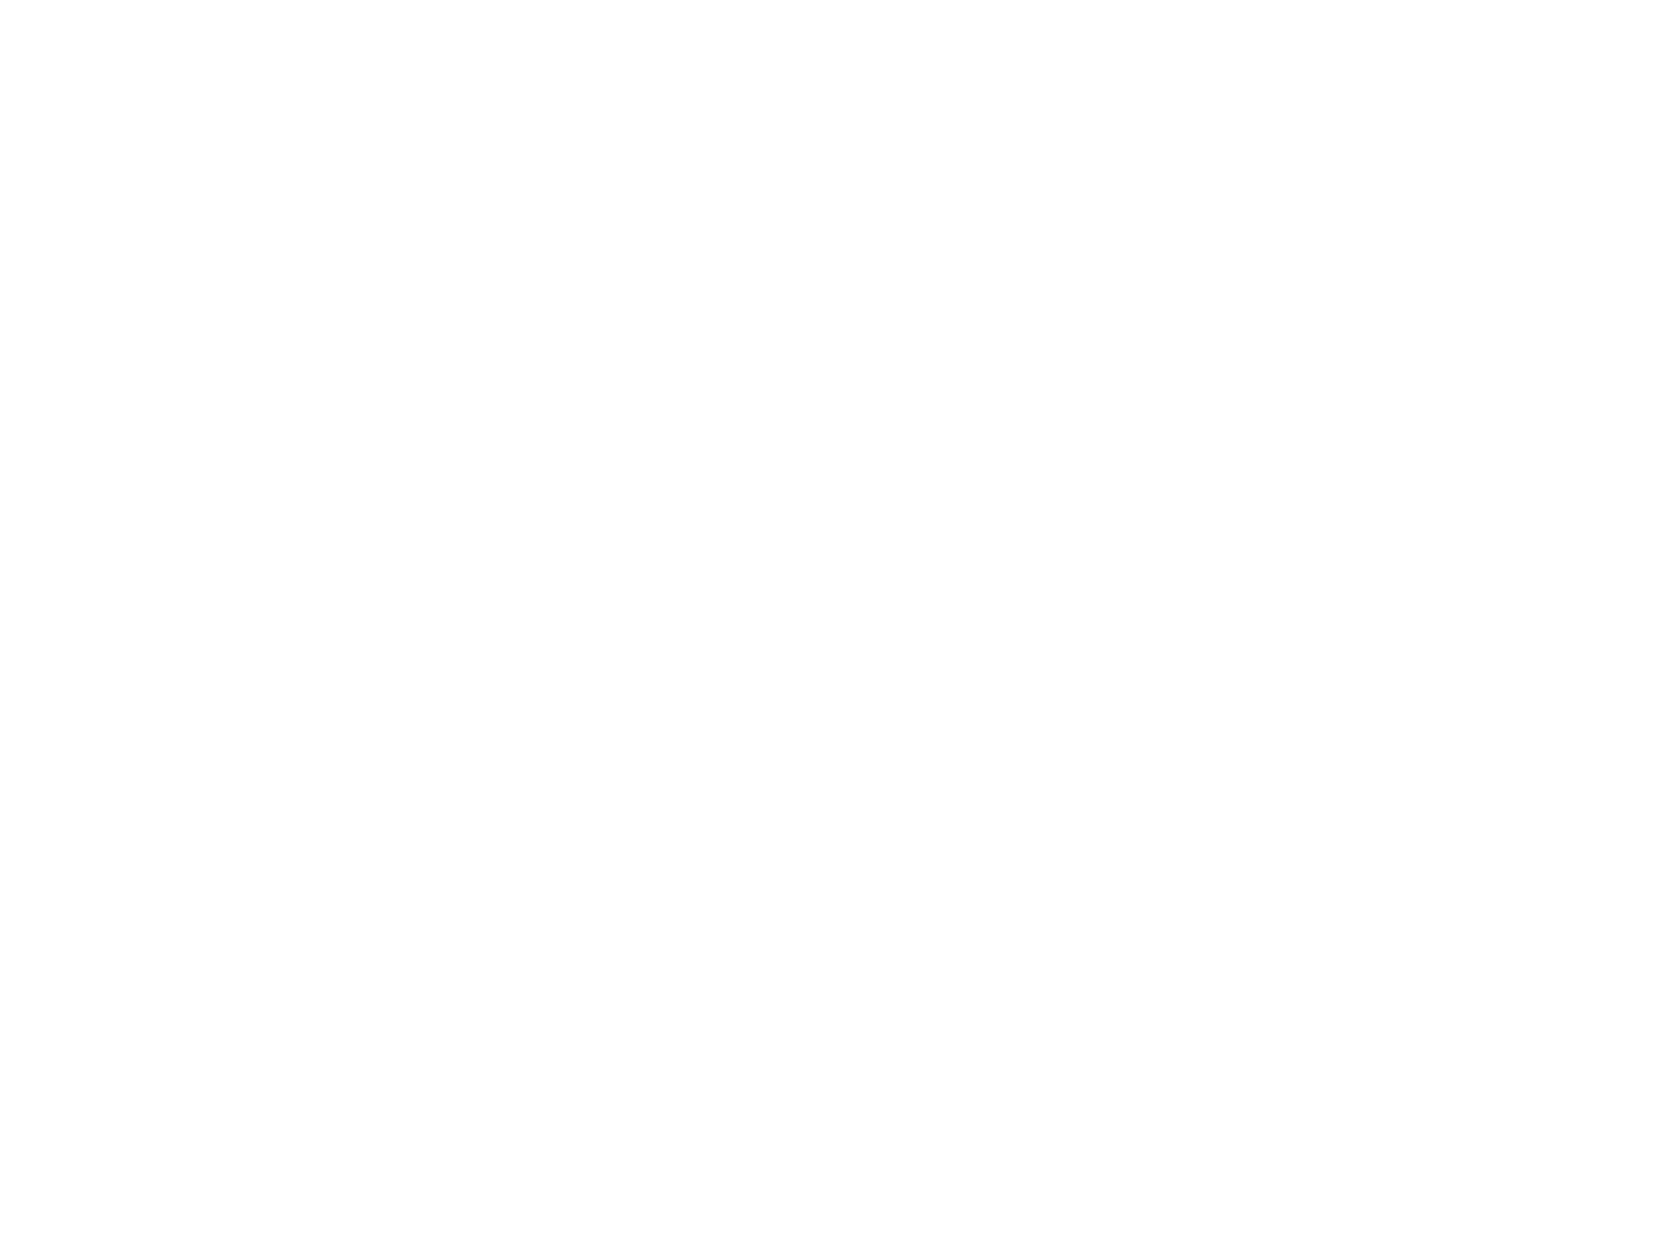 Дизайн визиток и логотипа авто магазина дискаунтера моторных масел ВКАНИСТРЕ